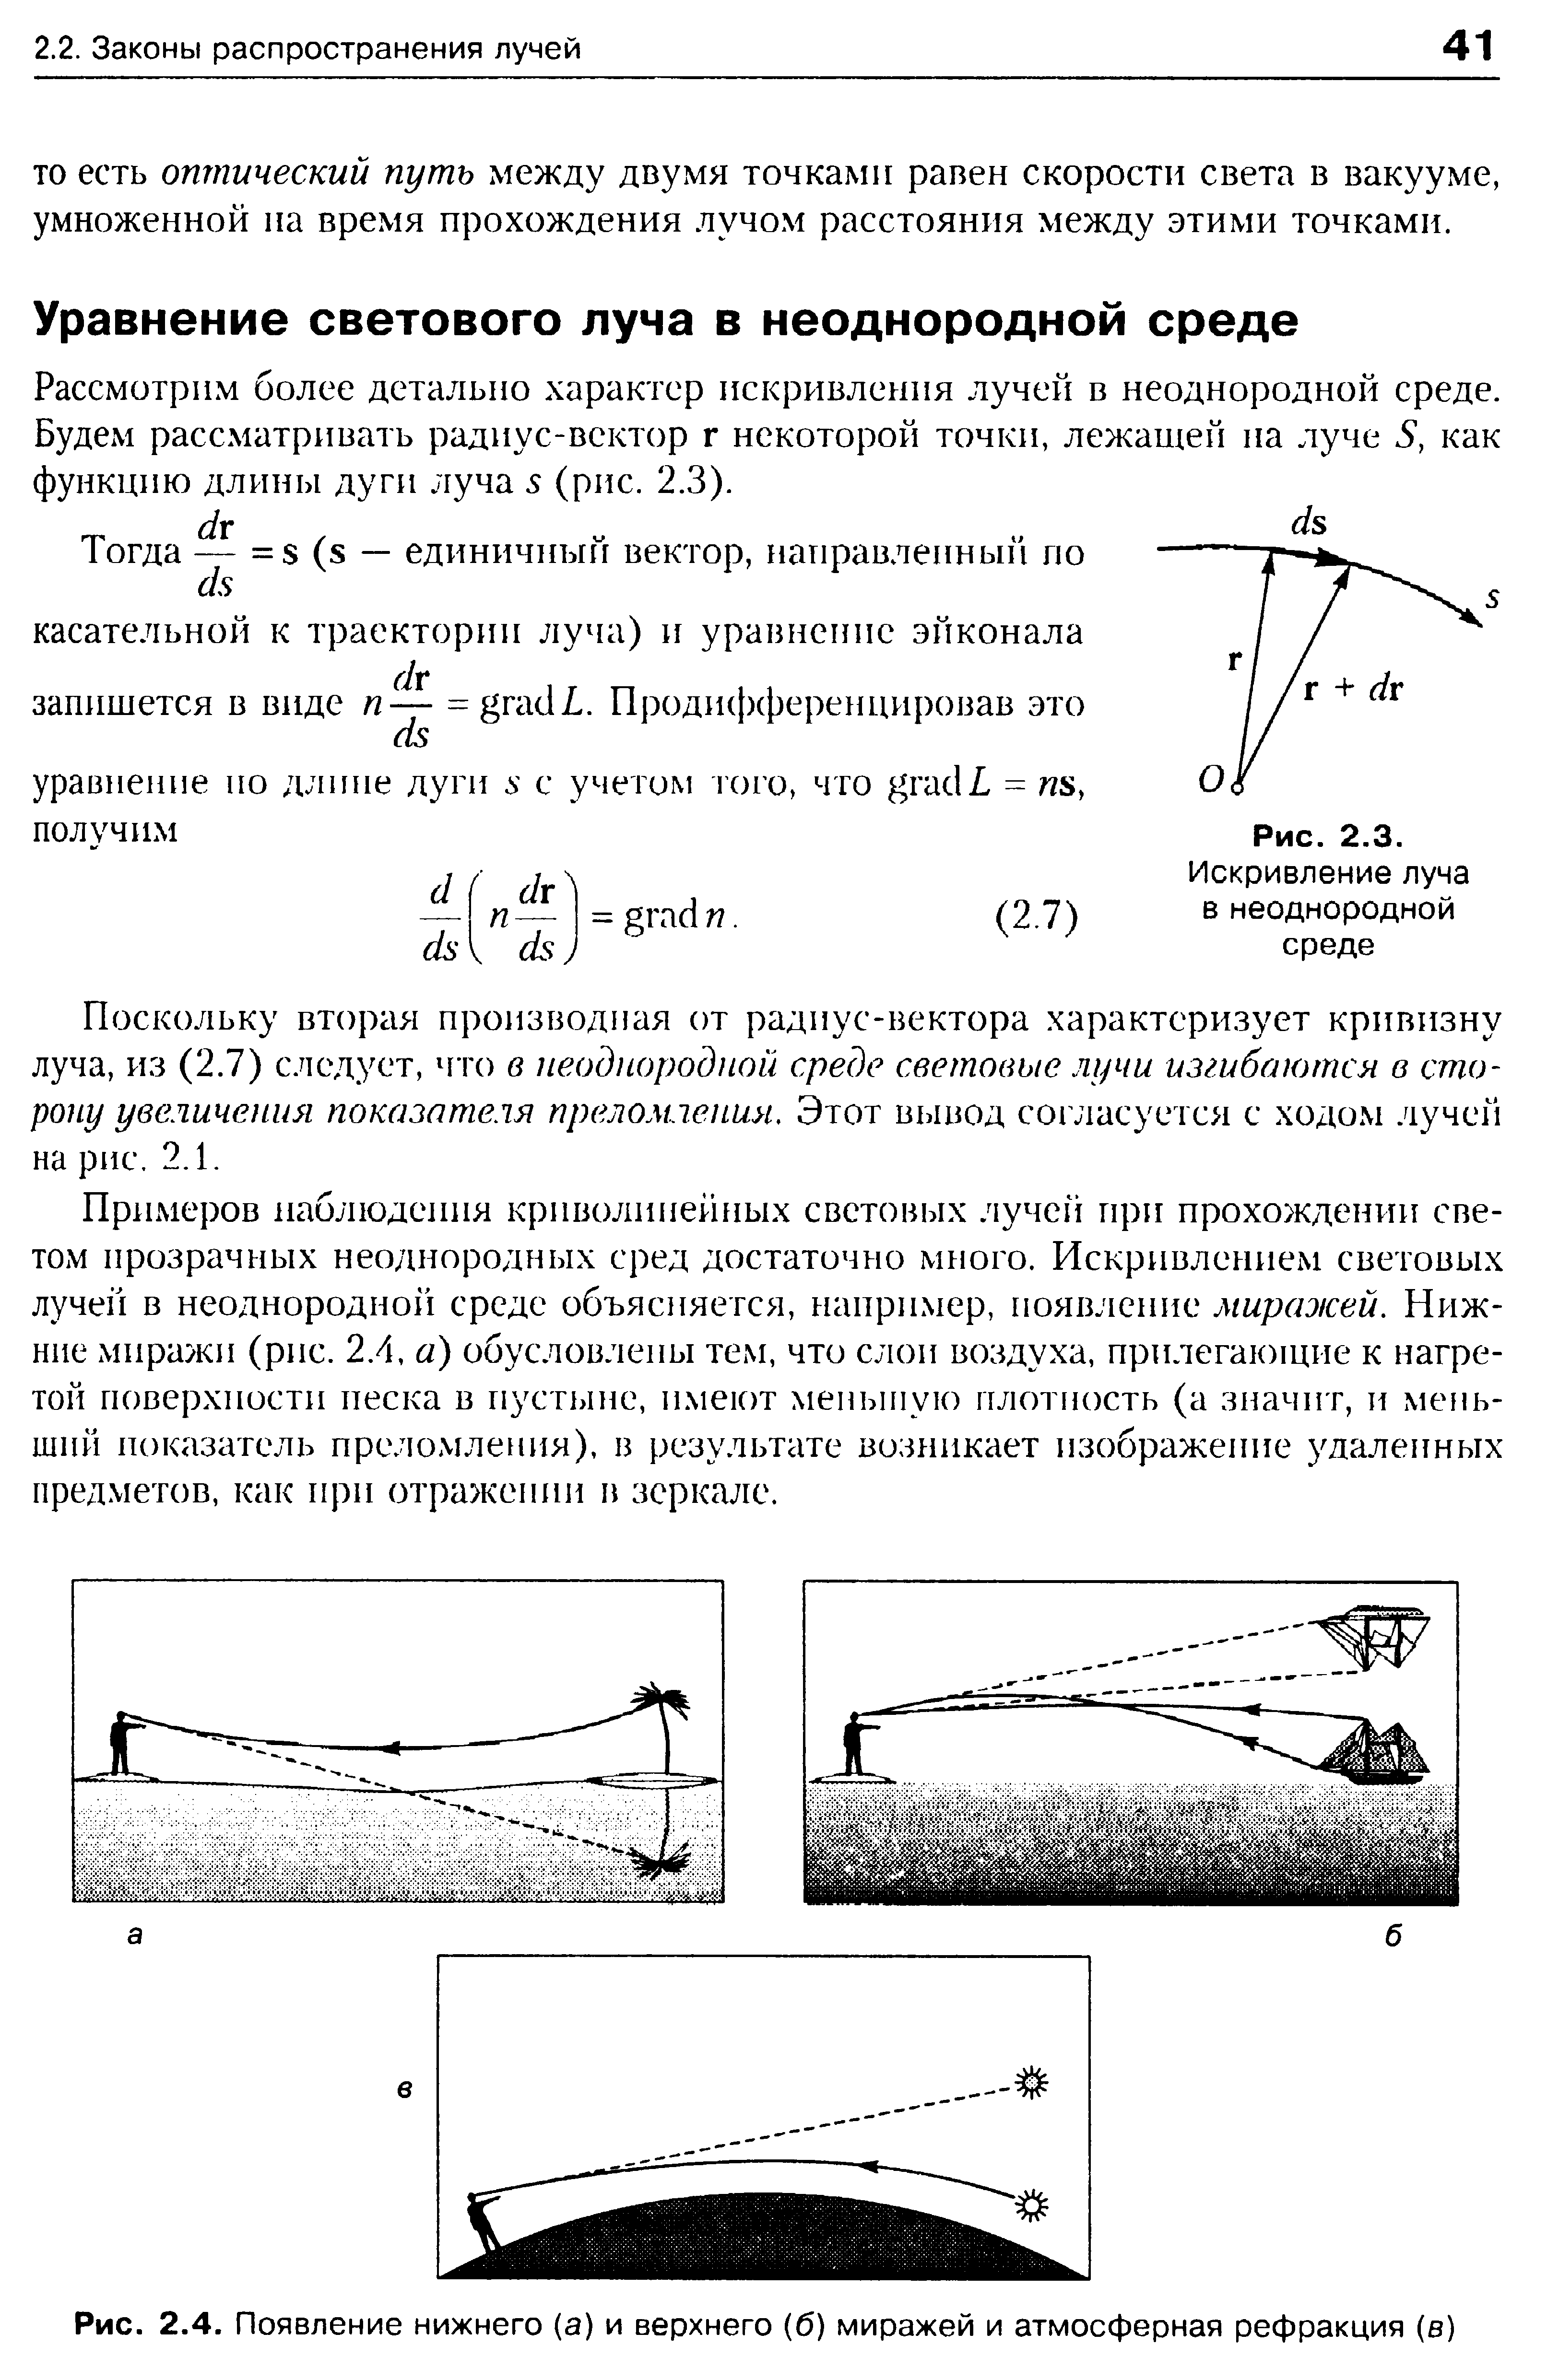 Рис. 2.4. Появление нижнего (а) и верхнего (б) миражей и атмосферная рефракция (е)
